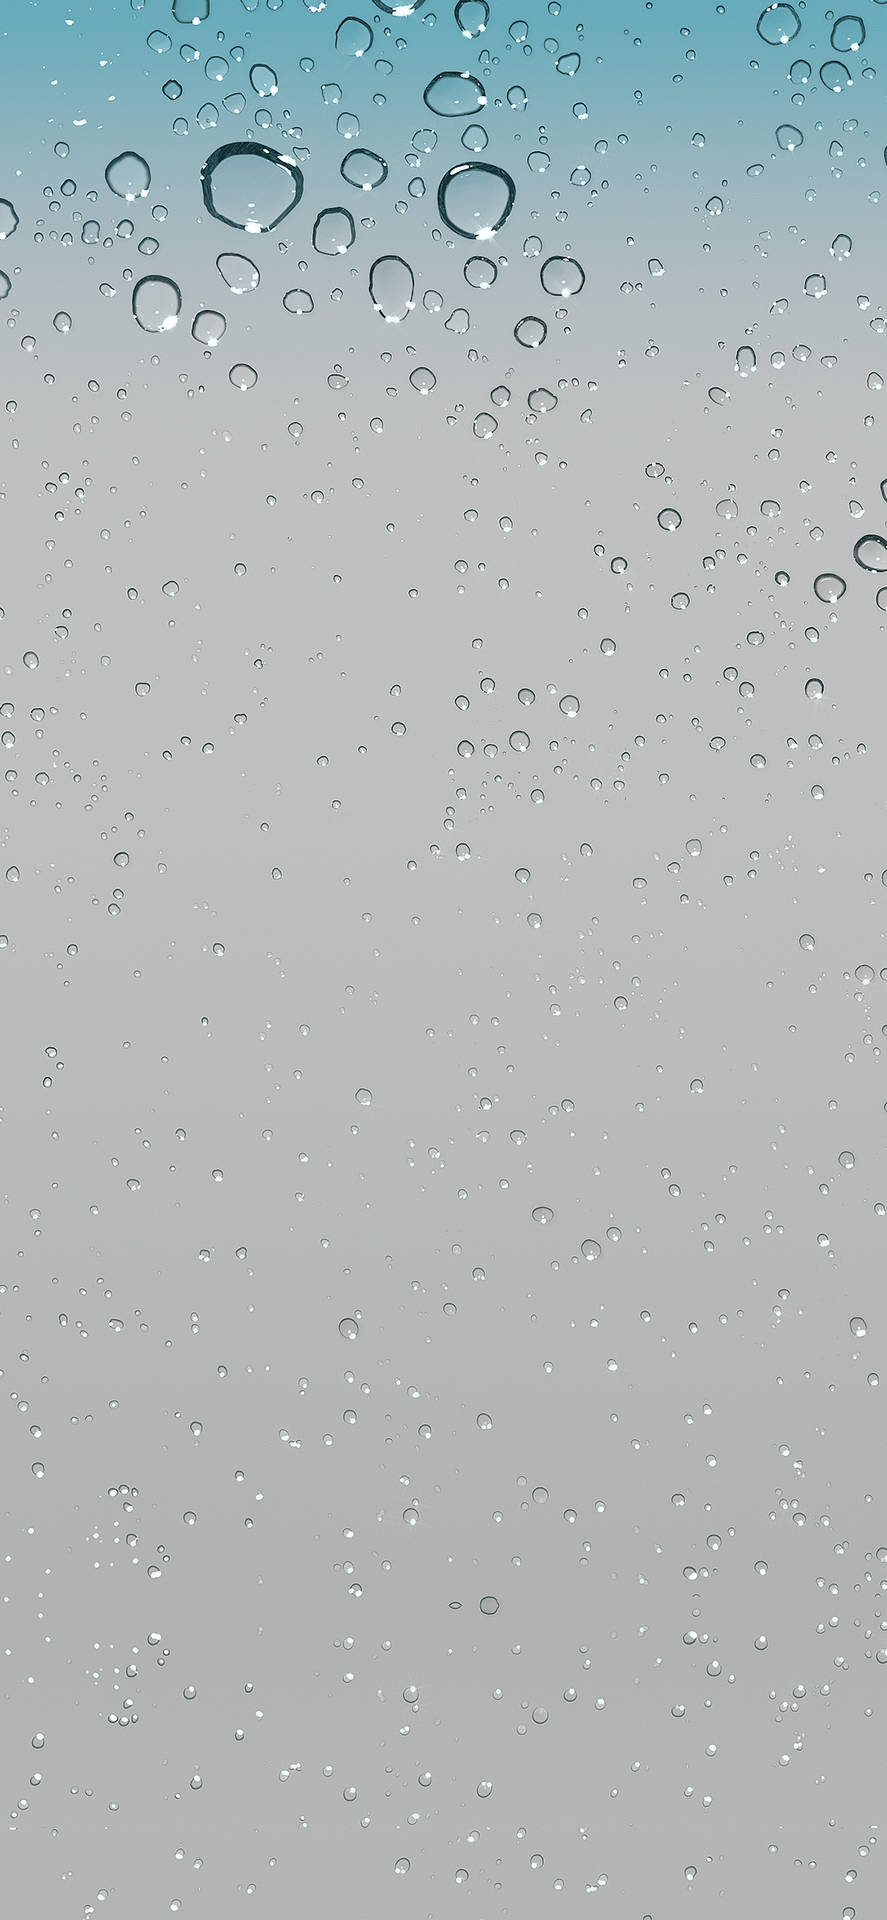 Waterdrops Original iPhone 4 Wallpaper